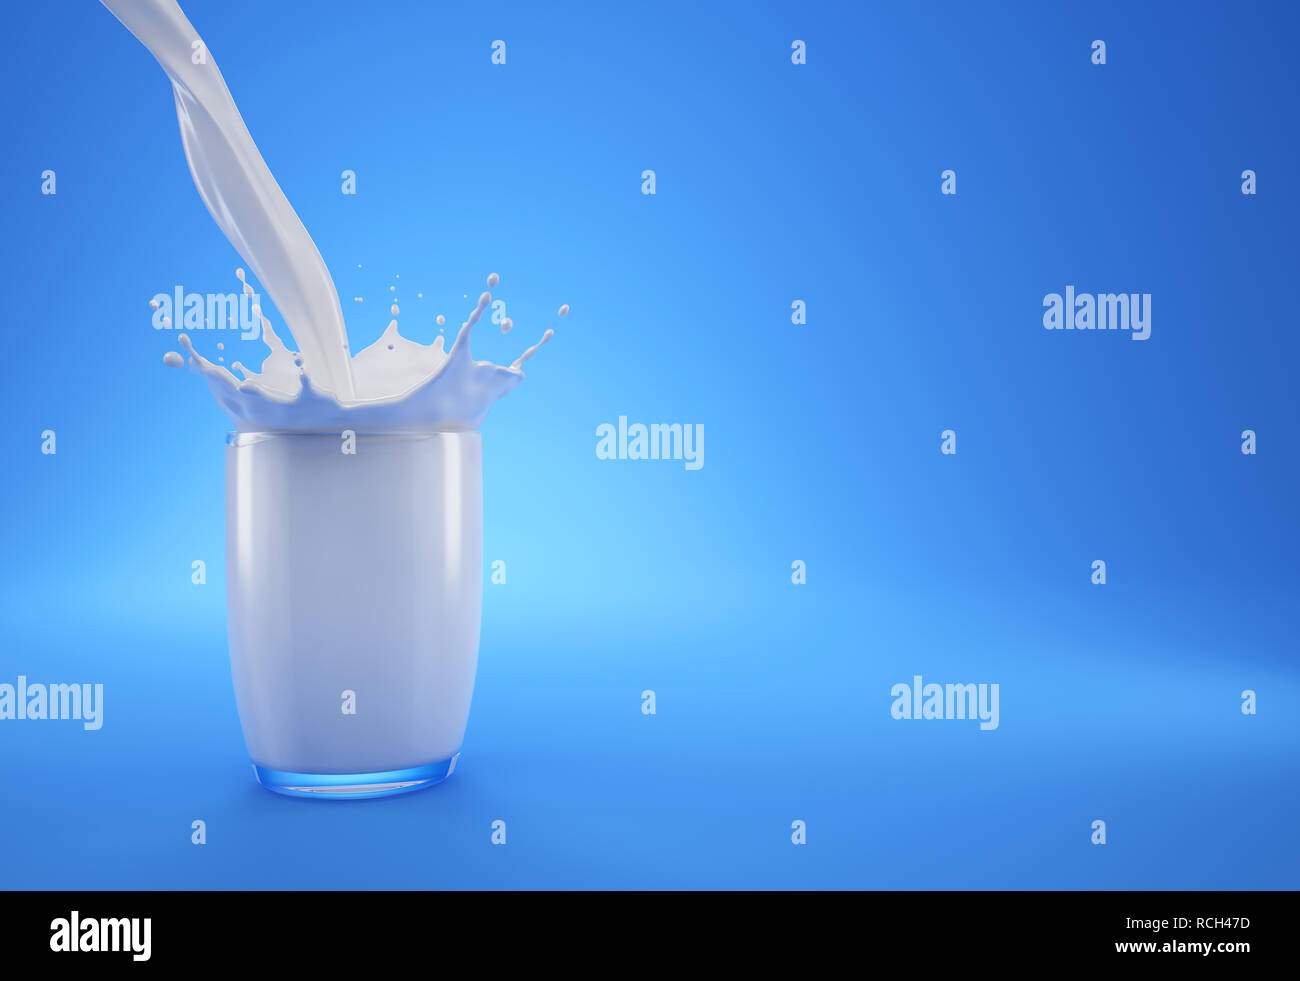 Versare il latte in un bicchiere pieno di latte con corona splash. Su sfondo blu. Con lo spazio libero su un lato per aggiungere testo. Foto Stock